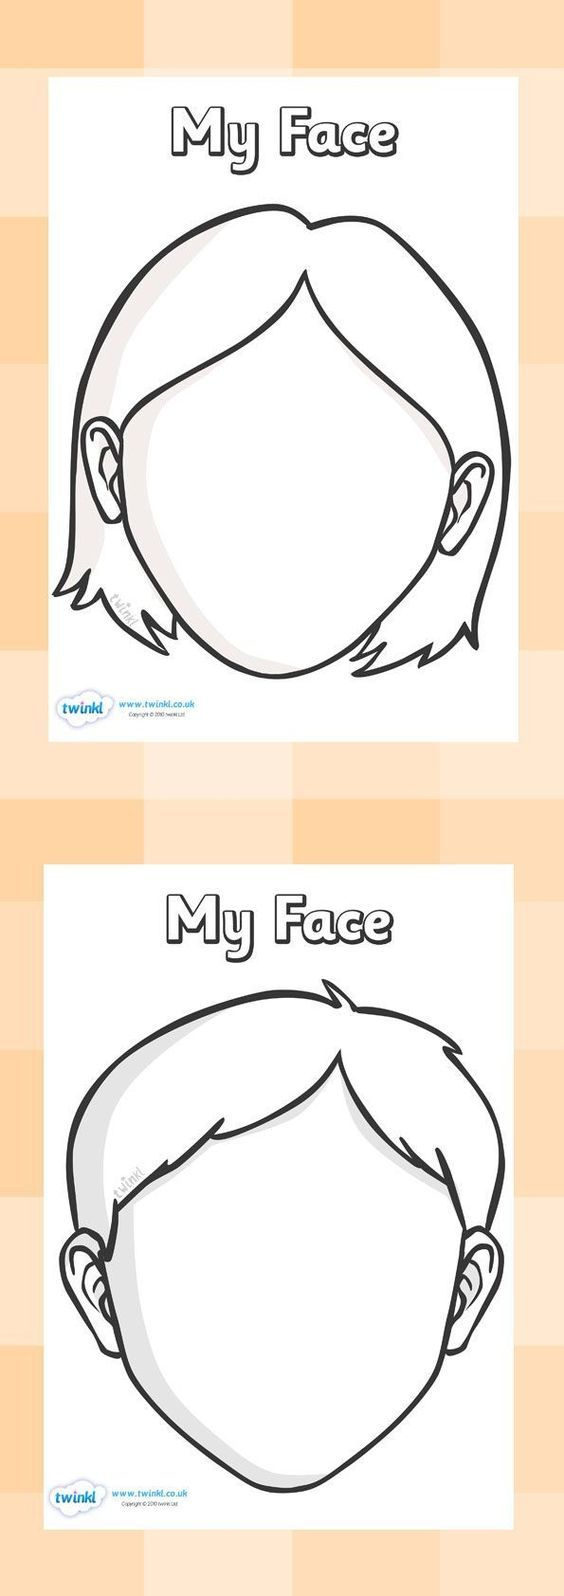 Blank Face Template Pack | Face Template, Blank Face pertaining to Blank Face Template Preschool